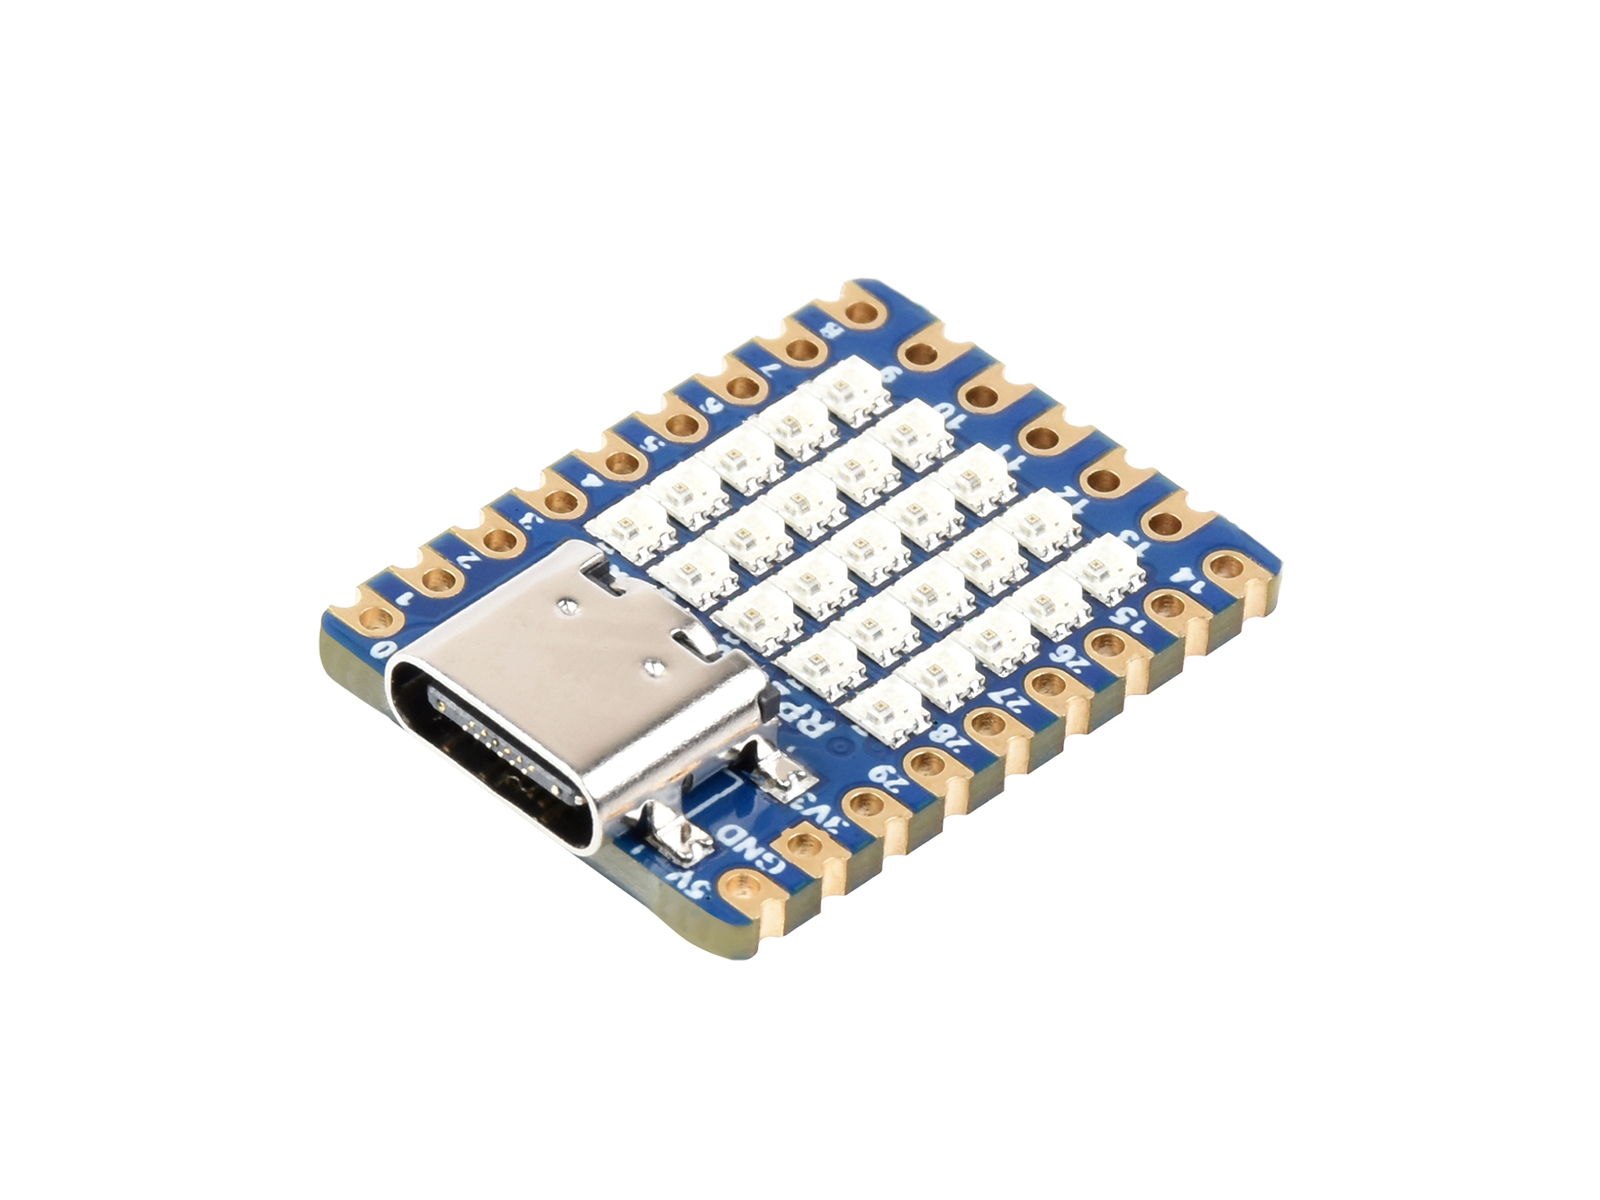 waveshare RP2040-One, 4MB Flash MCU Board, USB-A Plug, Pico-Like MCU Board  Based On Raspberry Pi RP2040, Dual-Core Arm Cortex M0+ Processor up to 133